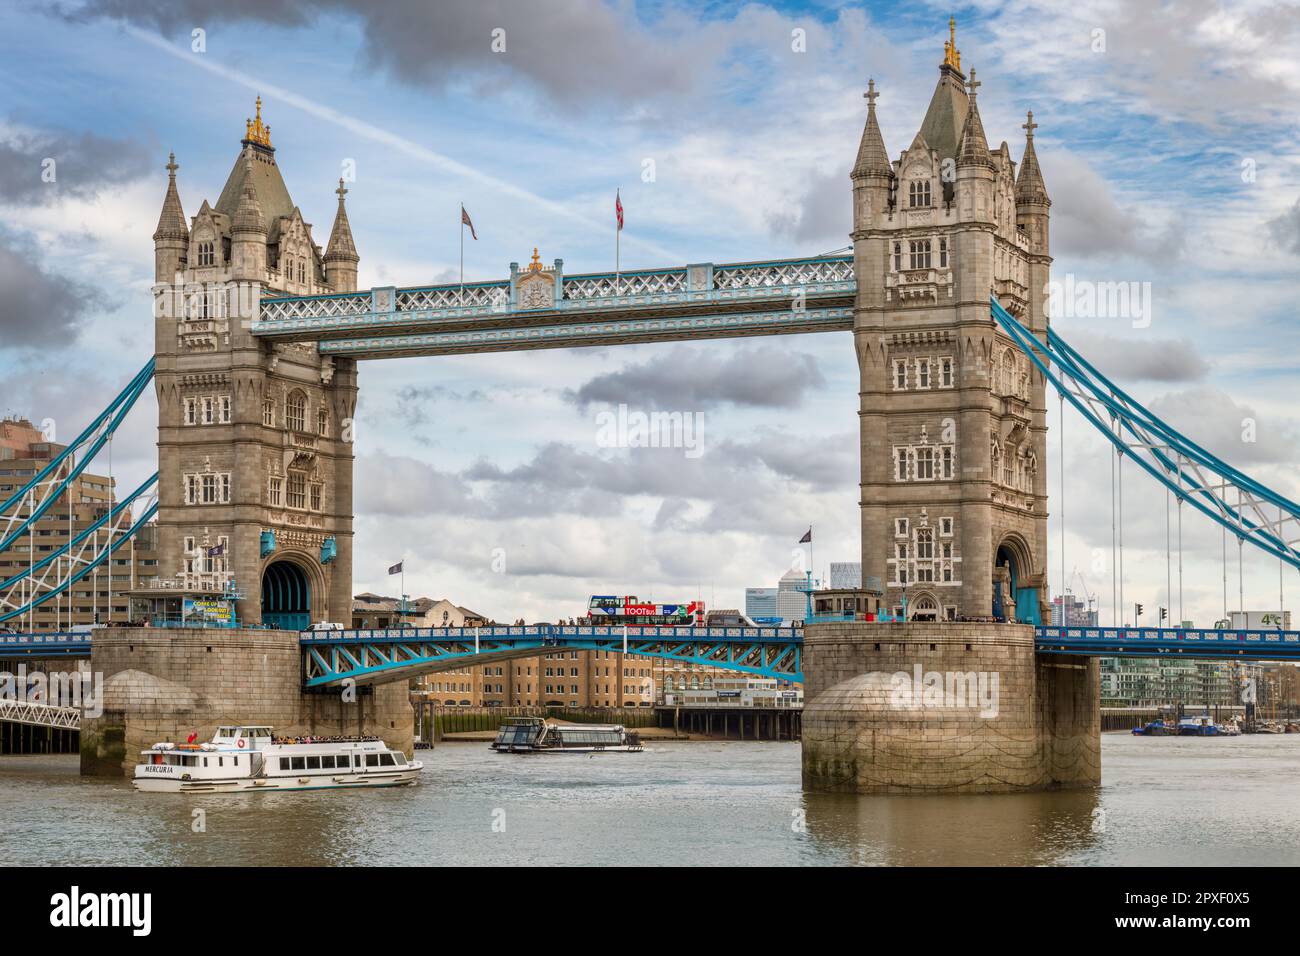 L'iconico Tower Bridge, riconosciuto in tutto il mondo, è un edificio classificato di primo livello e attraversa il Tamigi vicino alla Torre di Londra e alla città Foto Stock